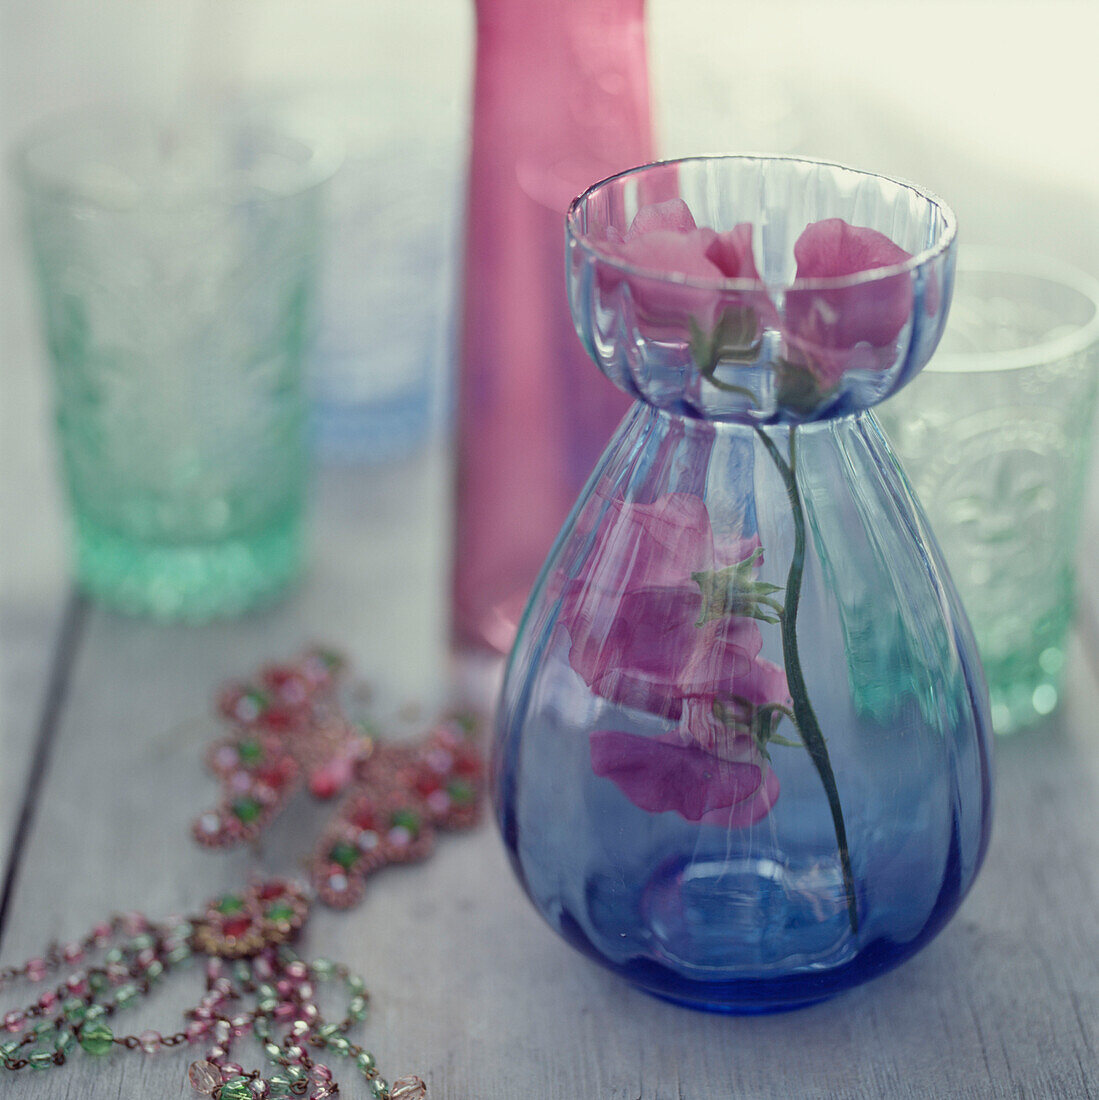 Farbige Gläser auf einer hölzernen Tischplatte mit einer Blume in einer Vase